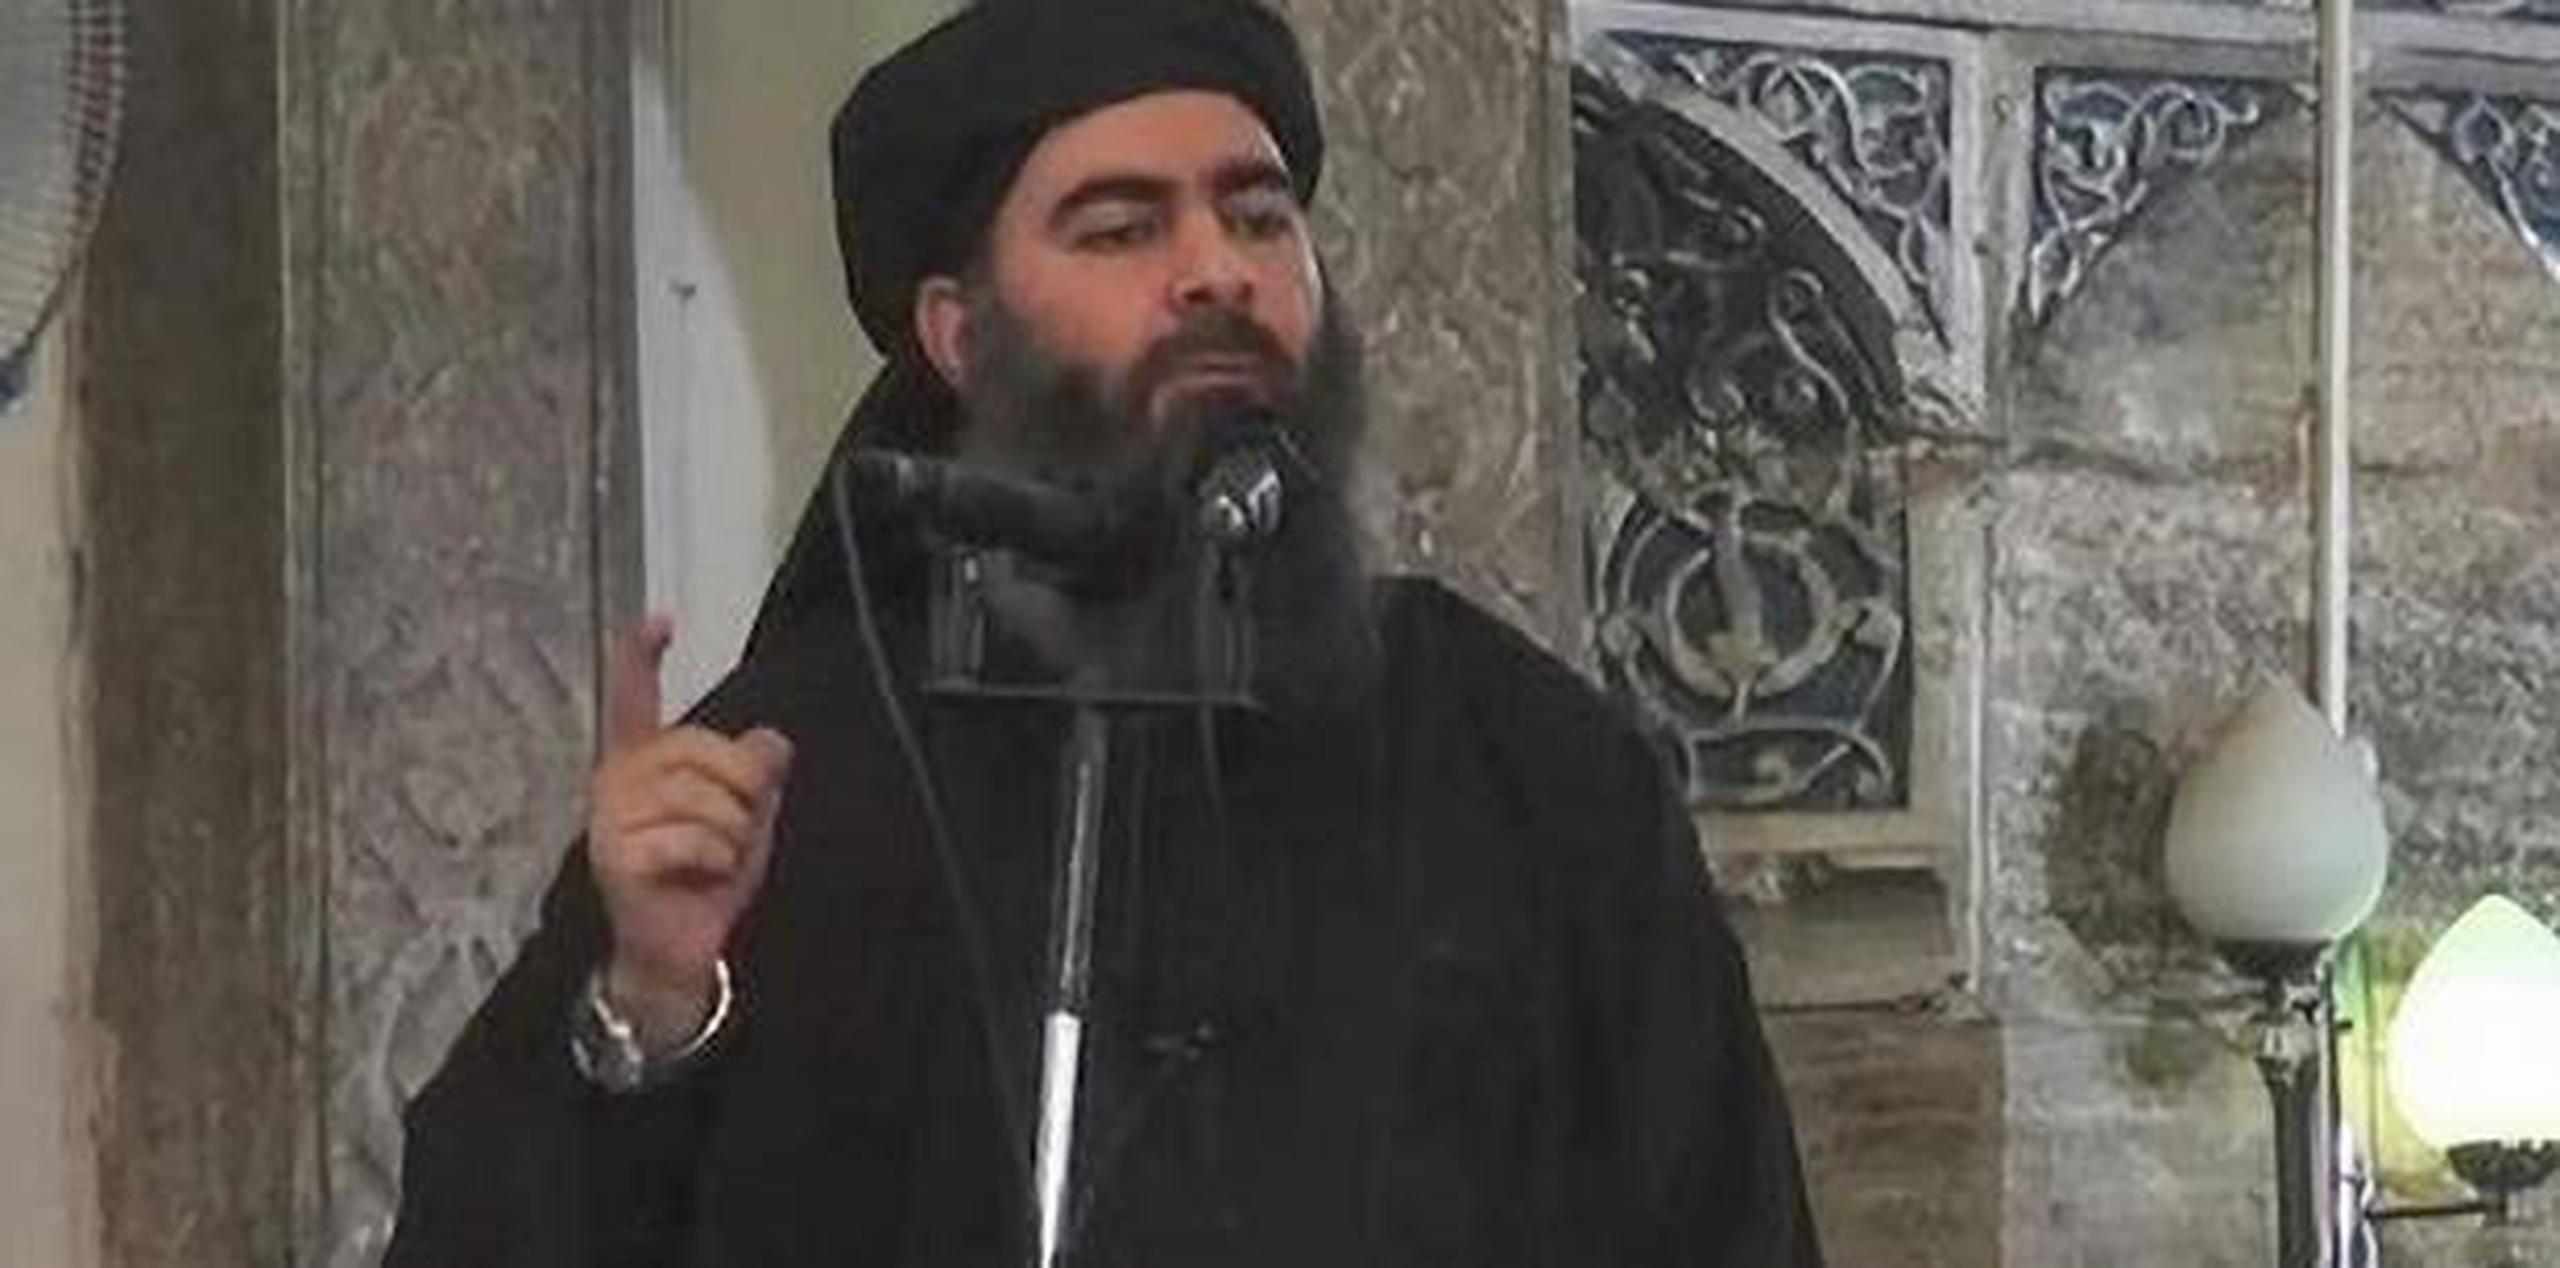 El anuncio del deceso del hijo menor de Abu Bakr al-Baghdadi apareció en los perfiles de Estado Islámico en redes sociales. (EFE)